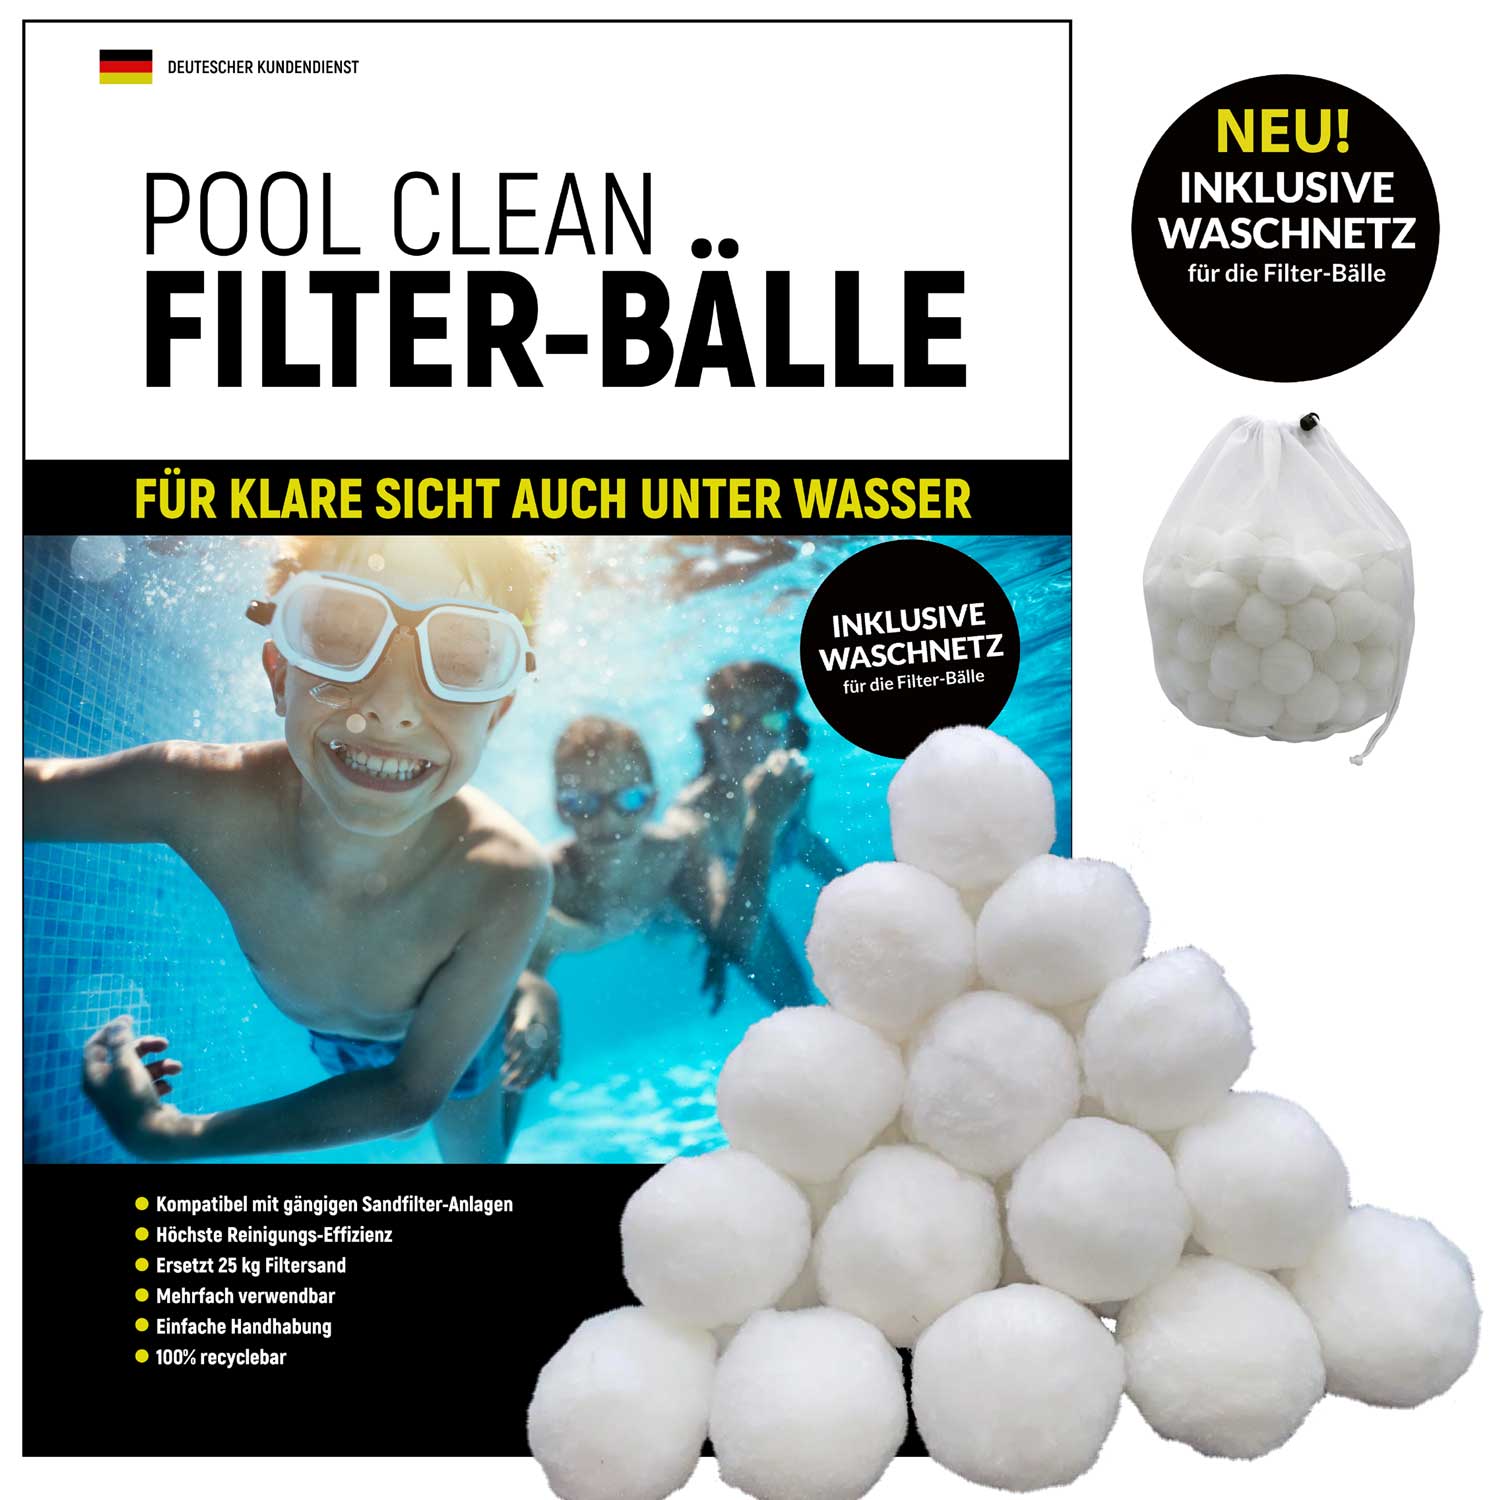 700g Filterbälle Sandfilteranlage Filter Balls Recyclebar Filter Für Pool DE NEU